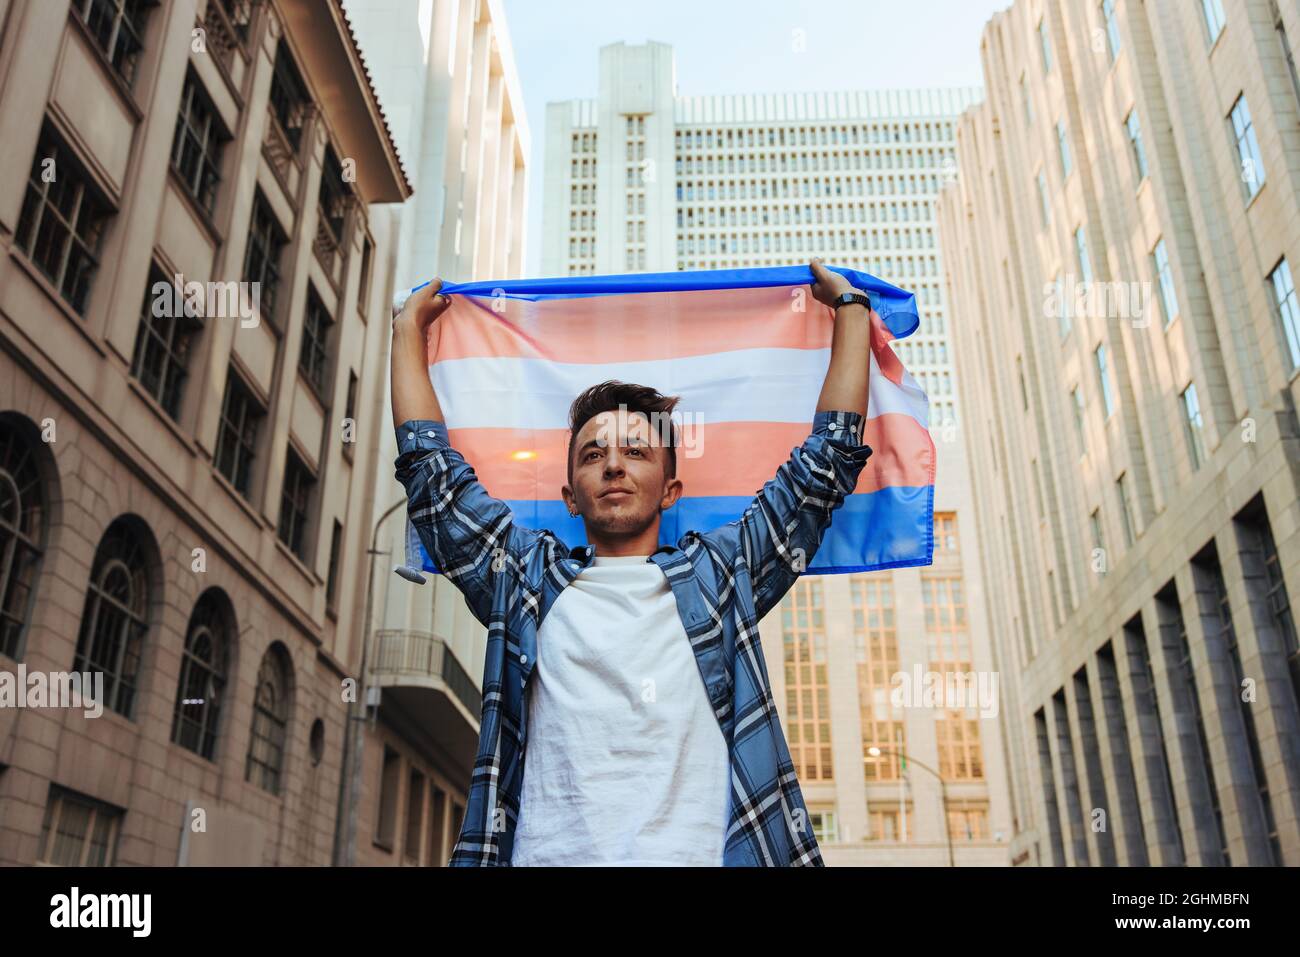 Transman levantando la bandera transgénero al aire libre. Joven transgénero confiado que celebra el orgullo gay en la ciudad. Hombre joven no conforme de género stan Foto de stock